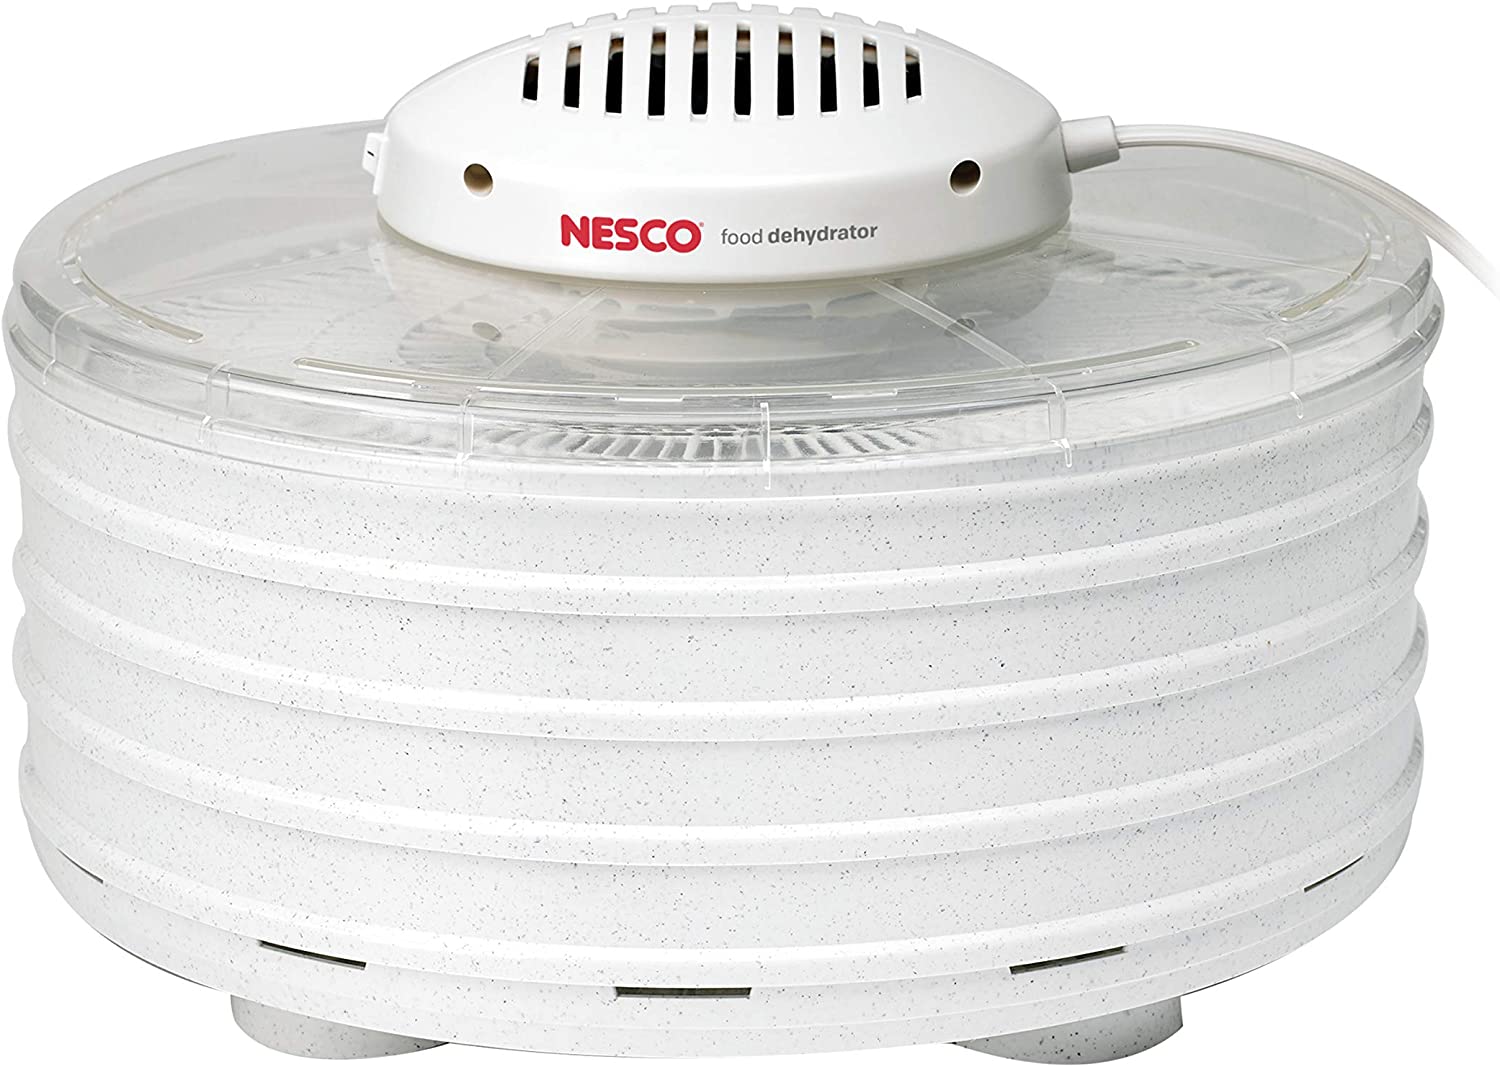 Round and white Nesco food dehydrator